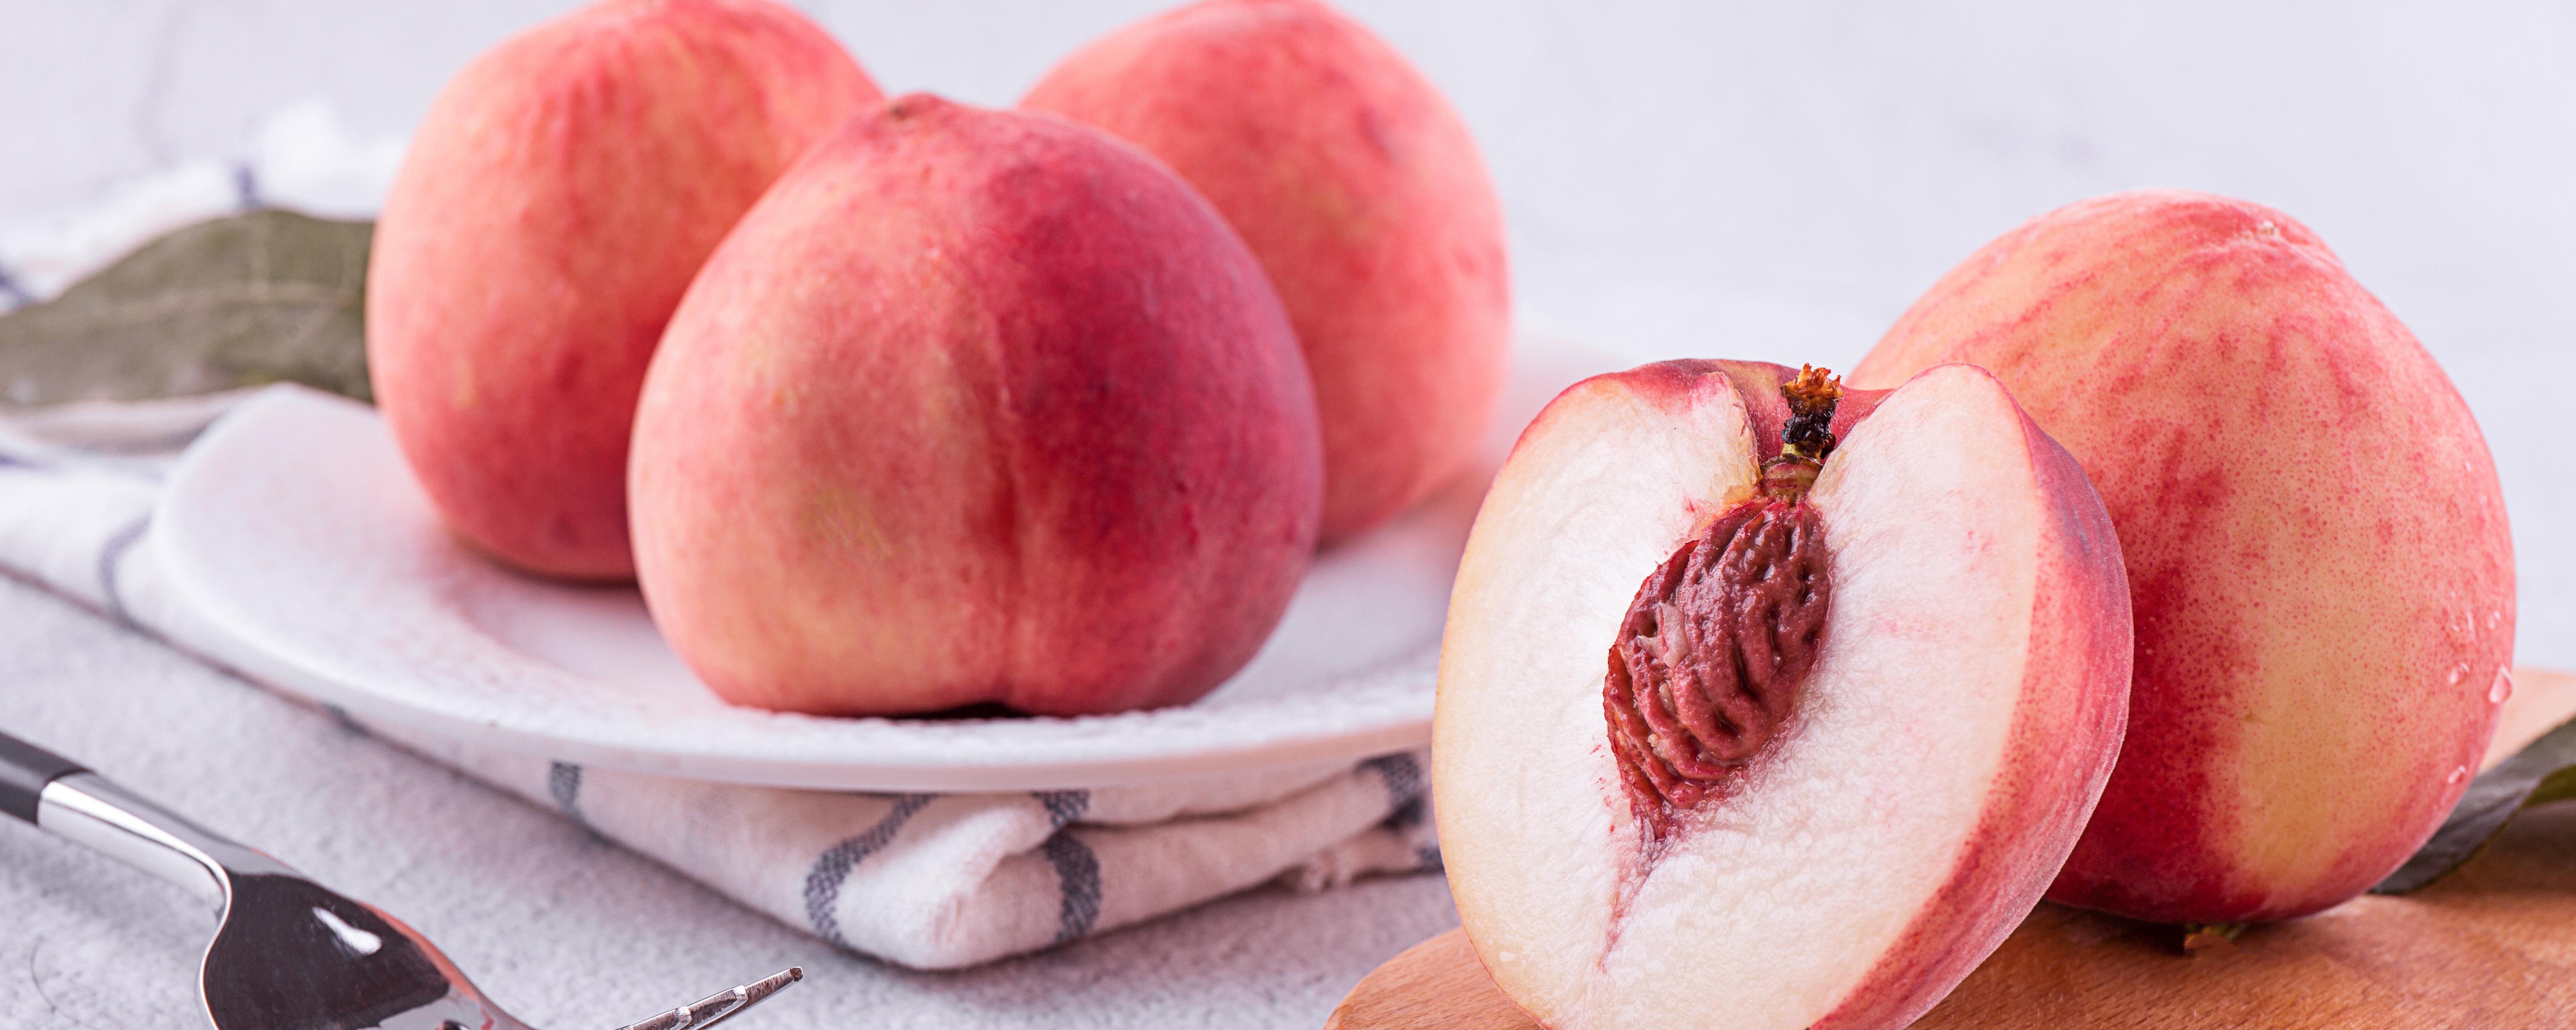 桃子外面好里面核发霉了能吃吗 桃子里面的核发霉了还能吃吗